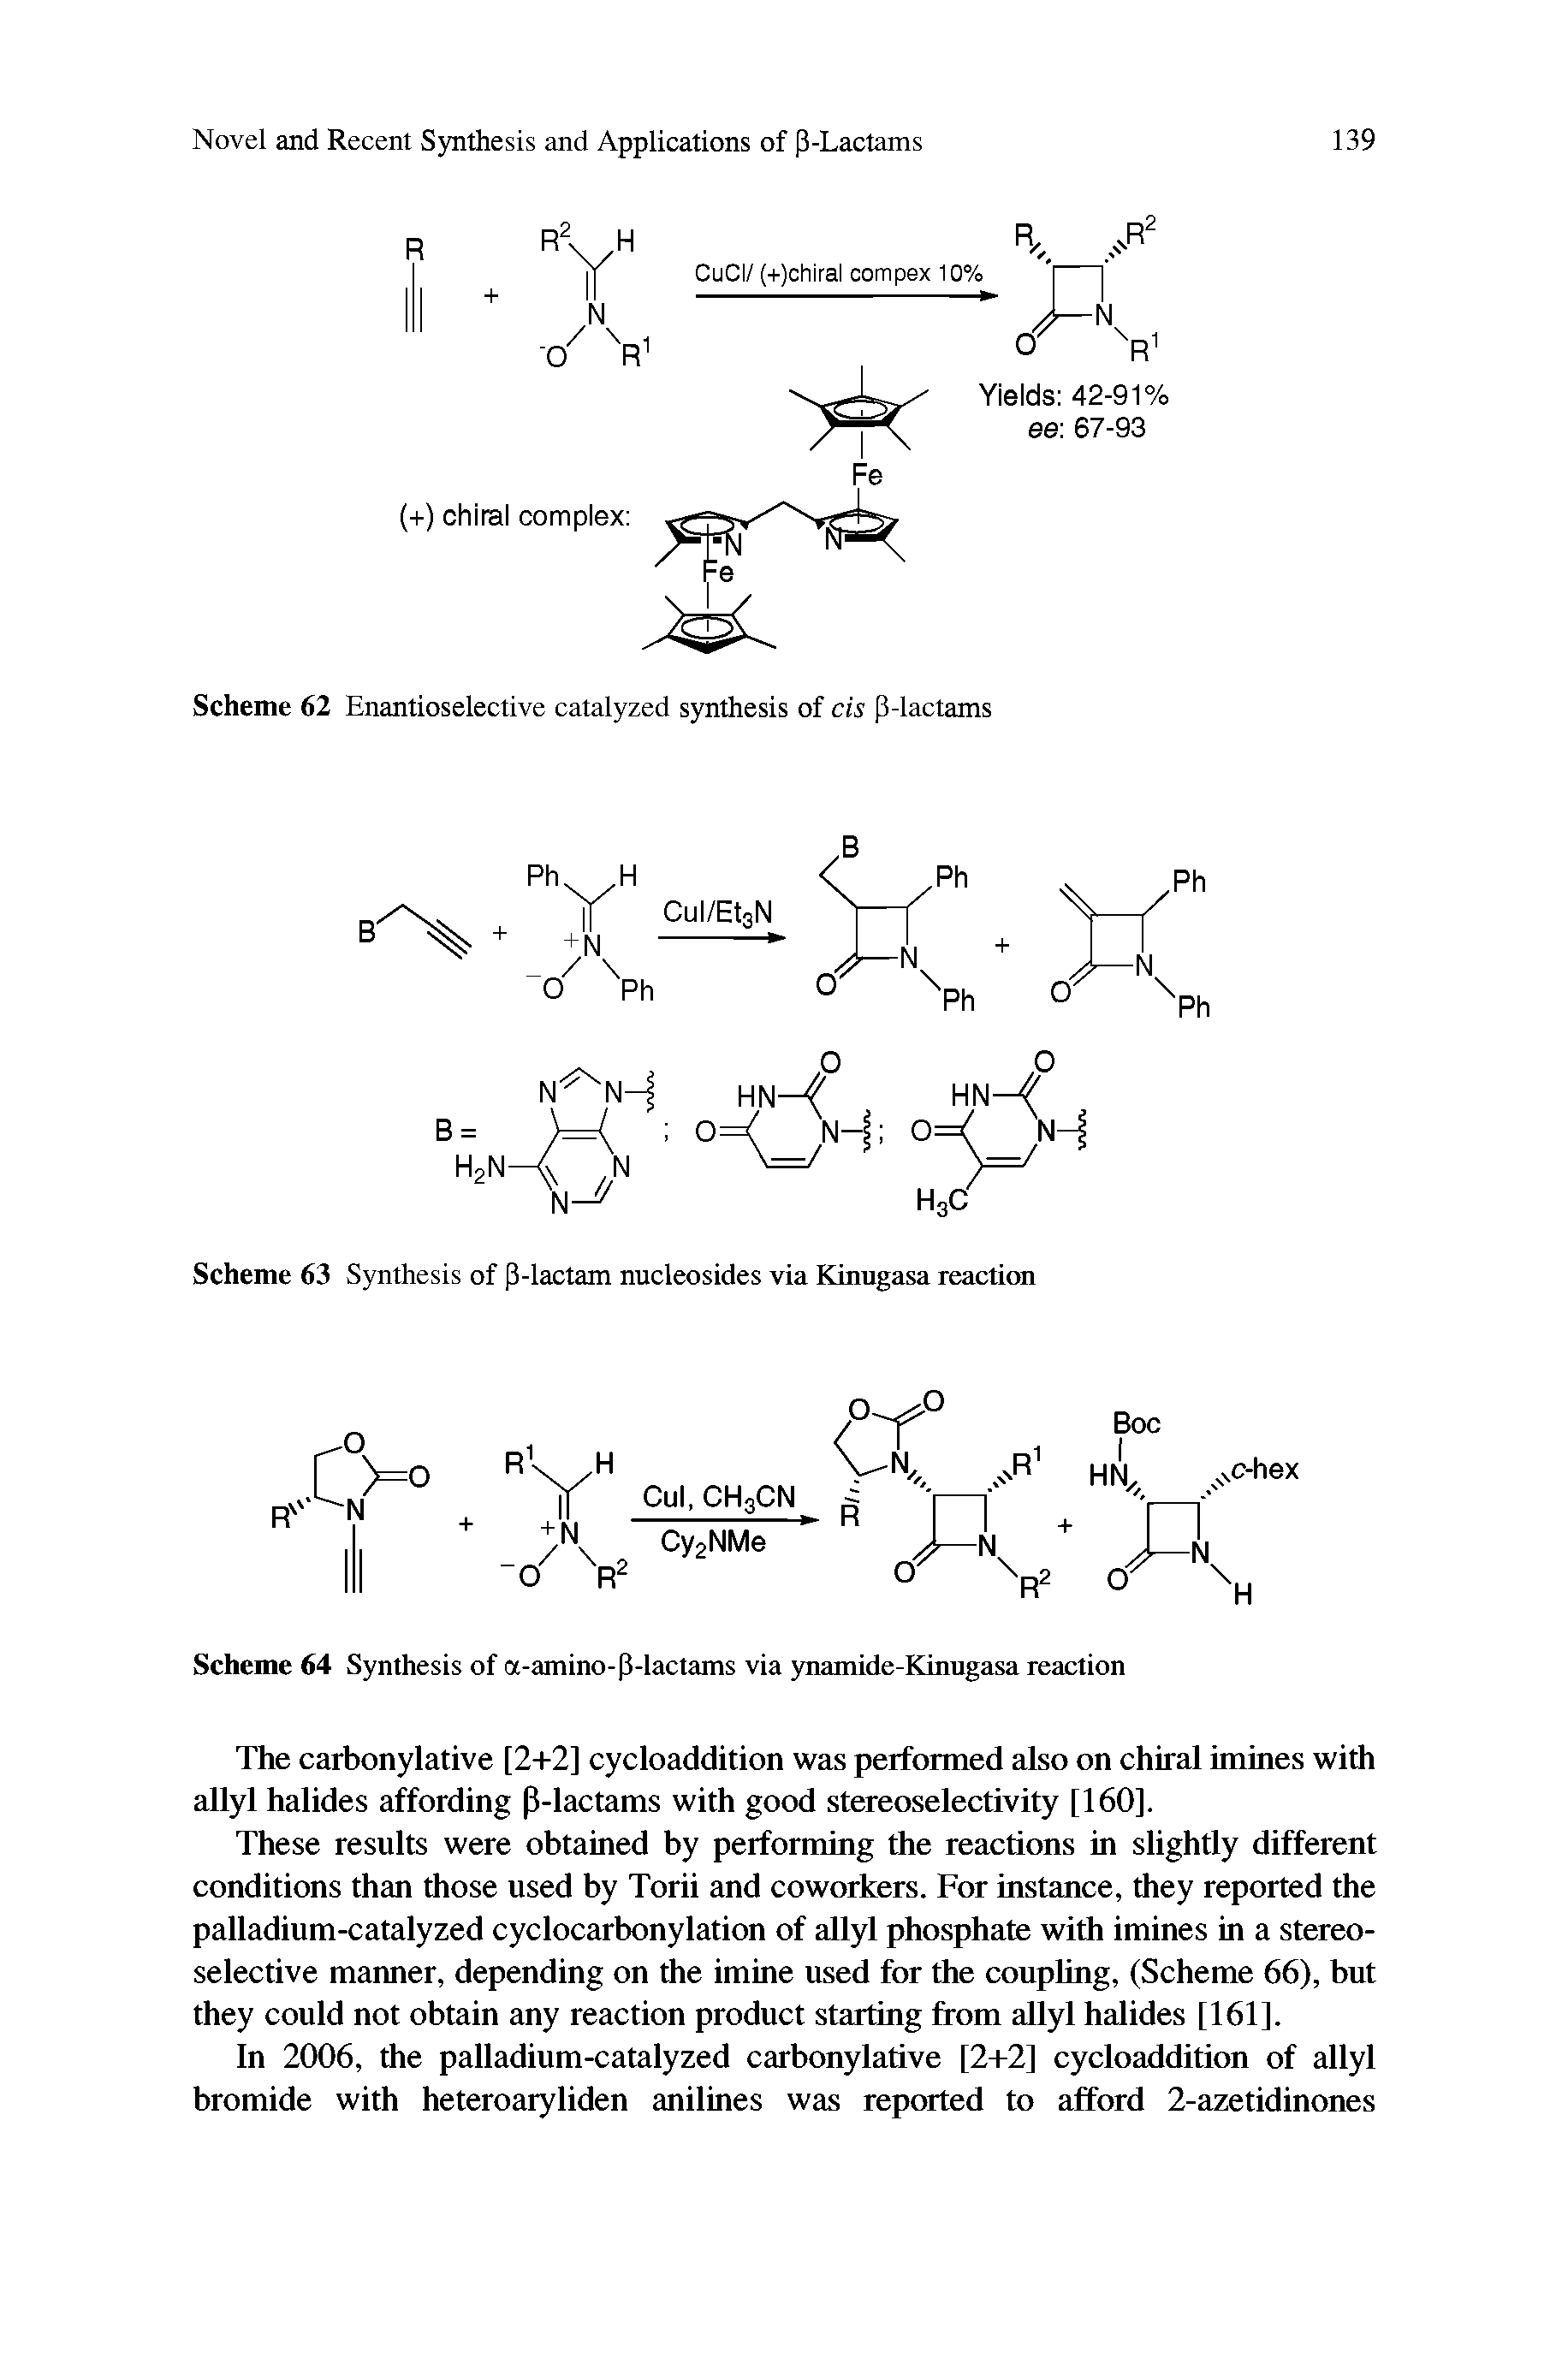 Scheme 64 Synthesis of a-amino-(3-lactams via ynamide-Kinugasa reaction...